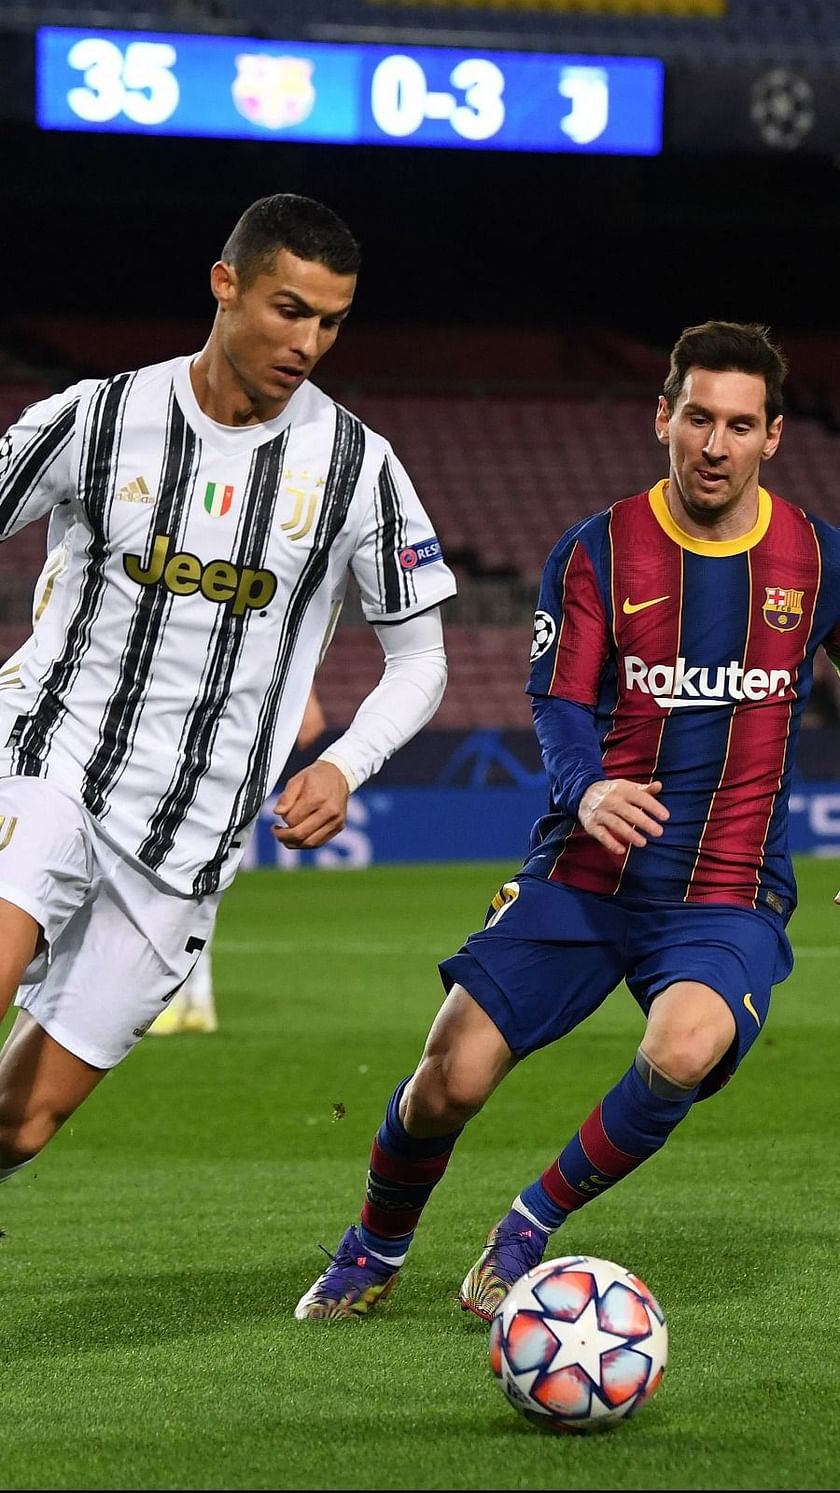 Messi vs. Ronaldo: The defining rivalry of the decade